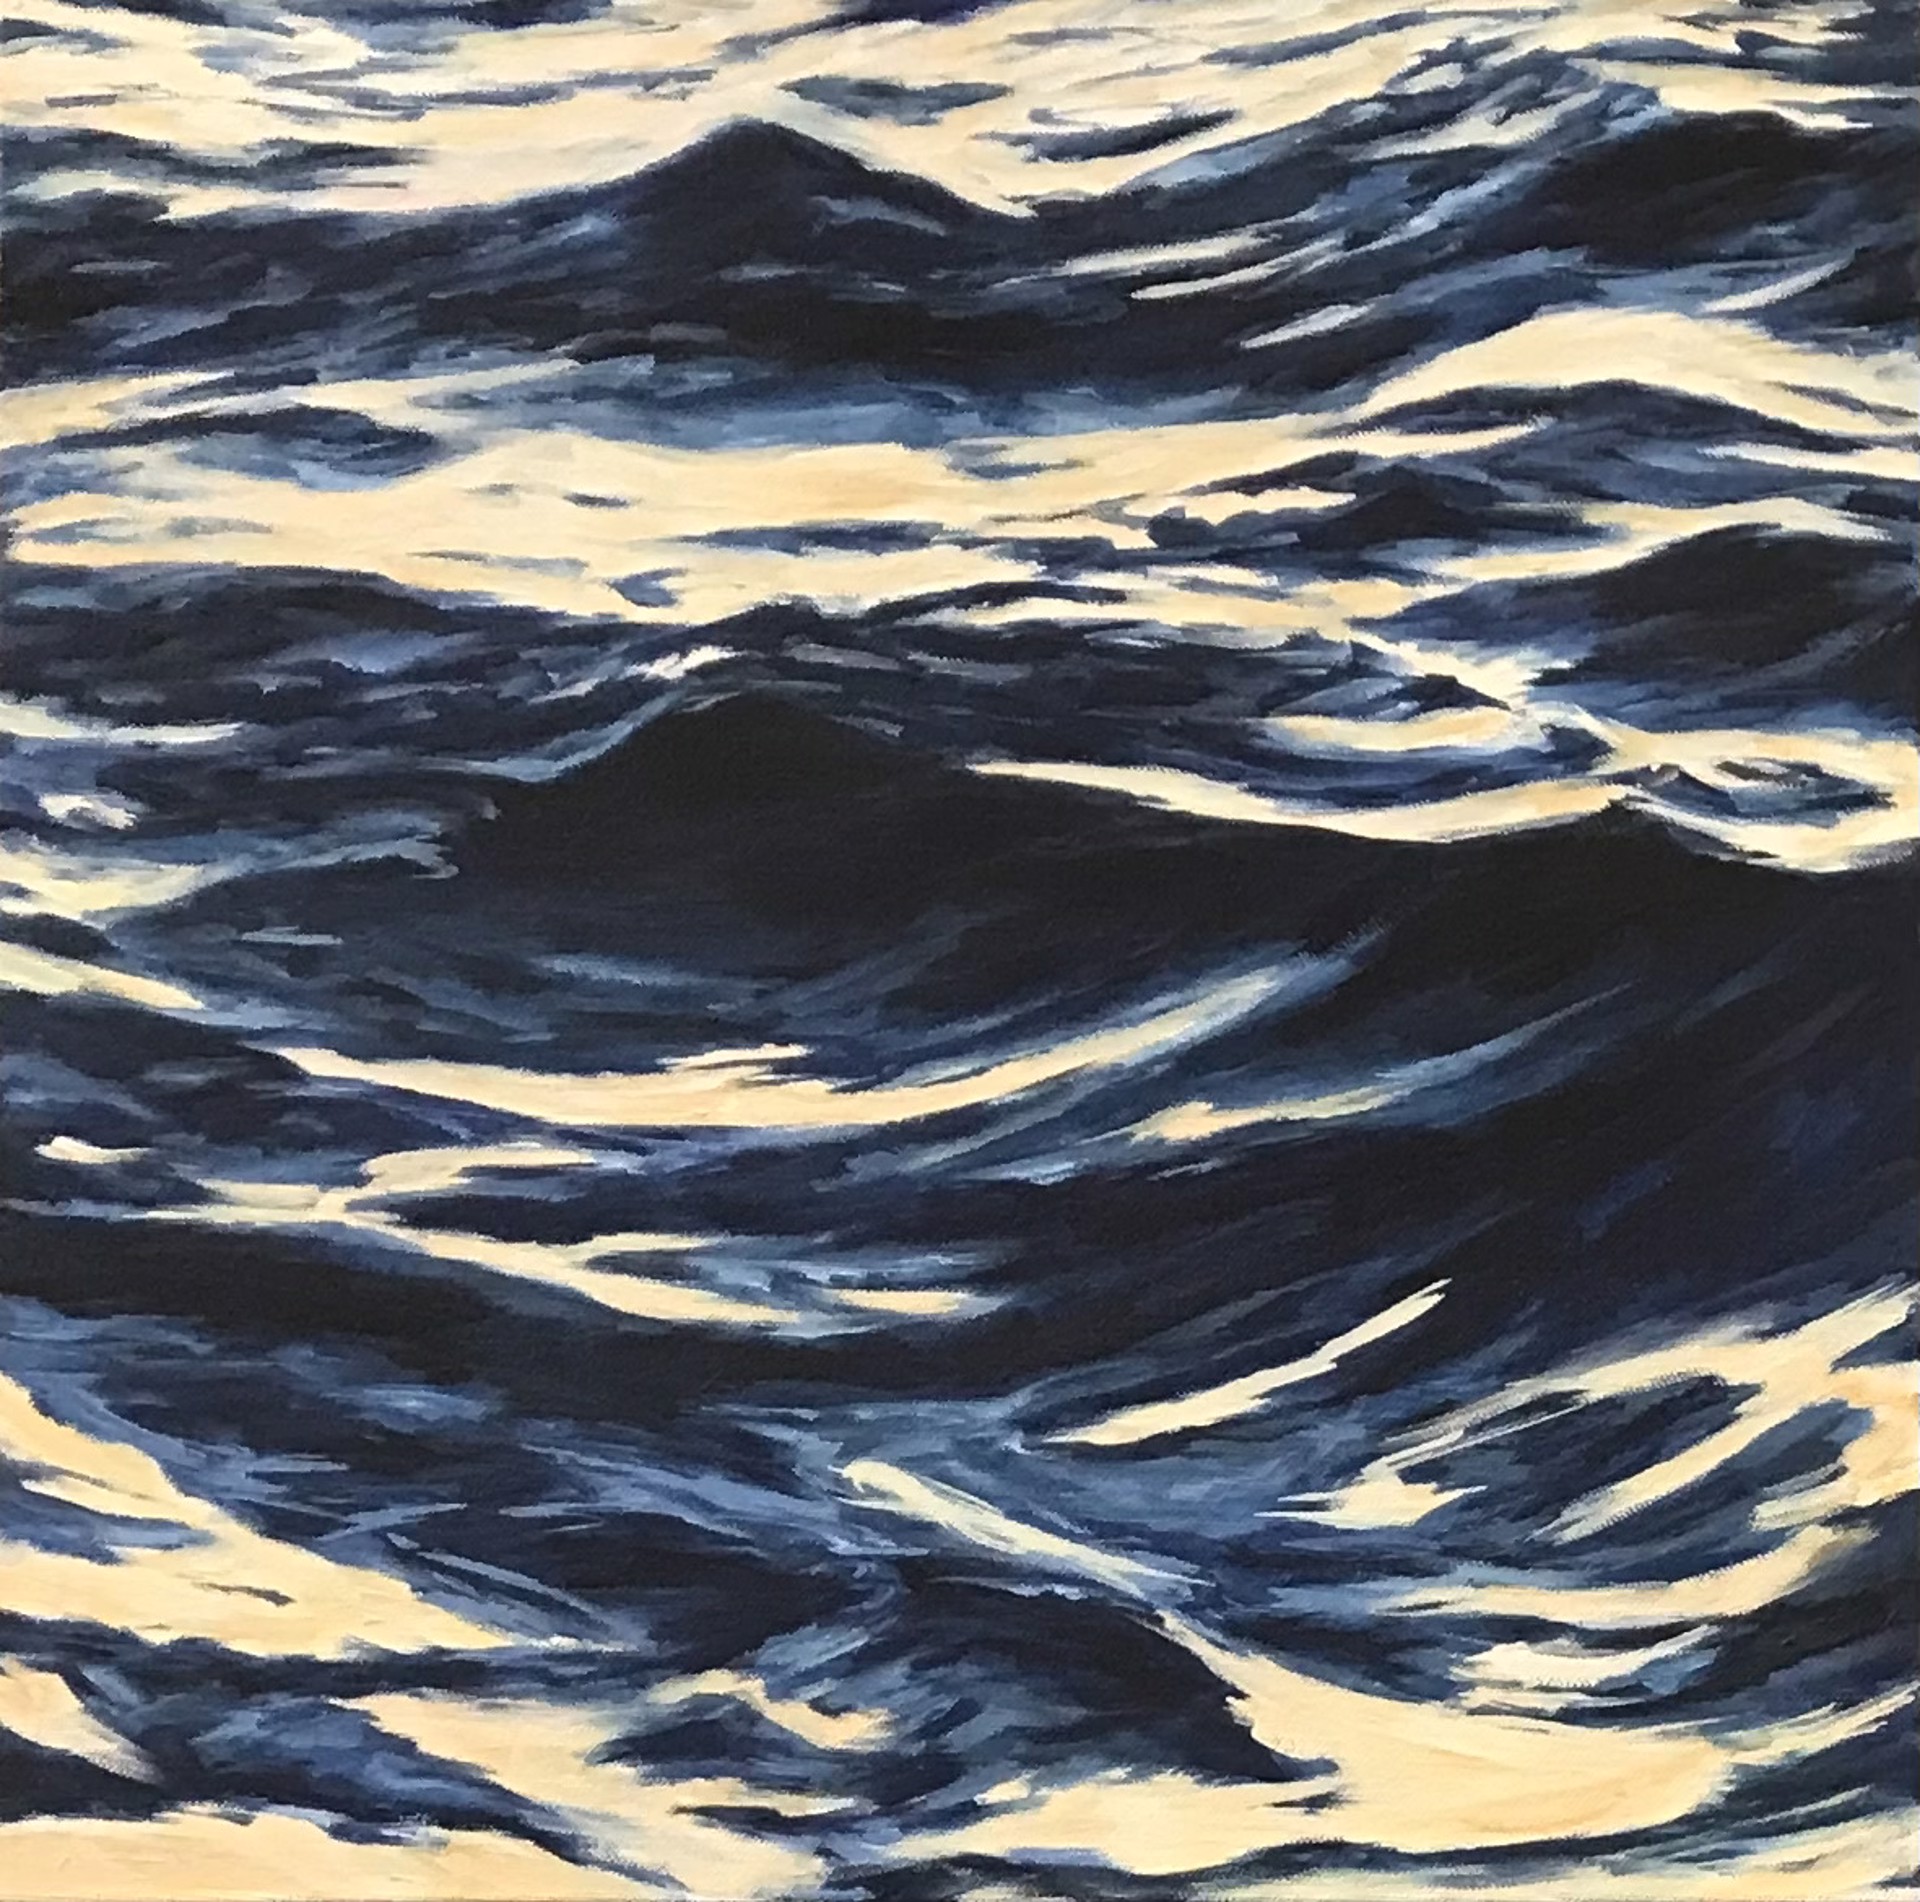 Lahaina Waves 7 by Valerie Eickmeier